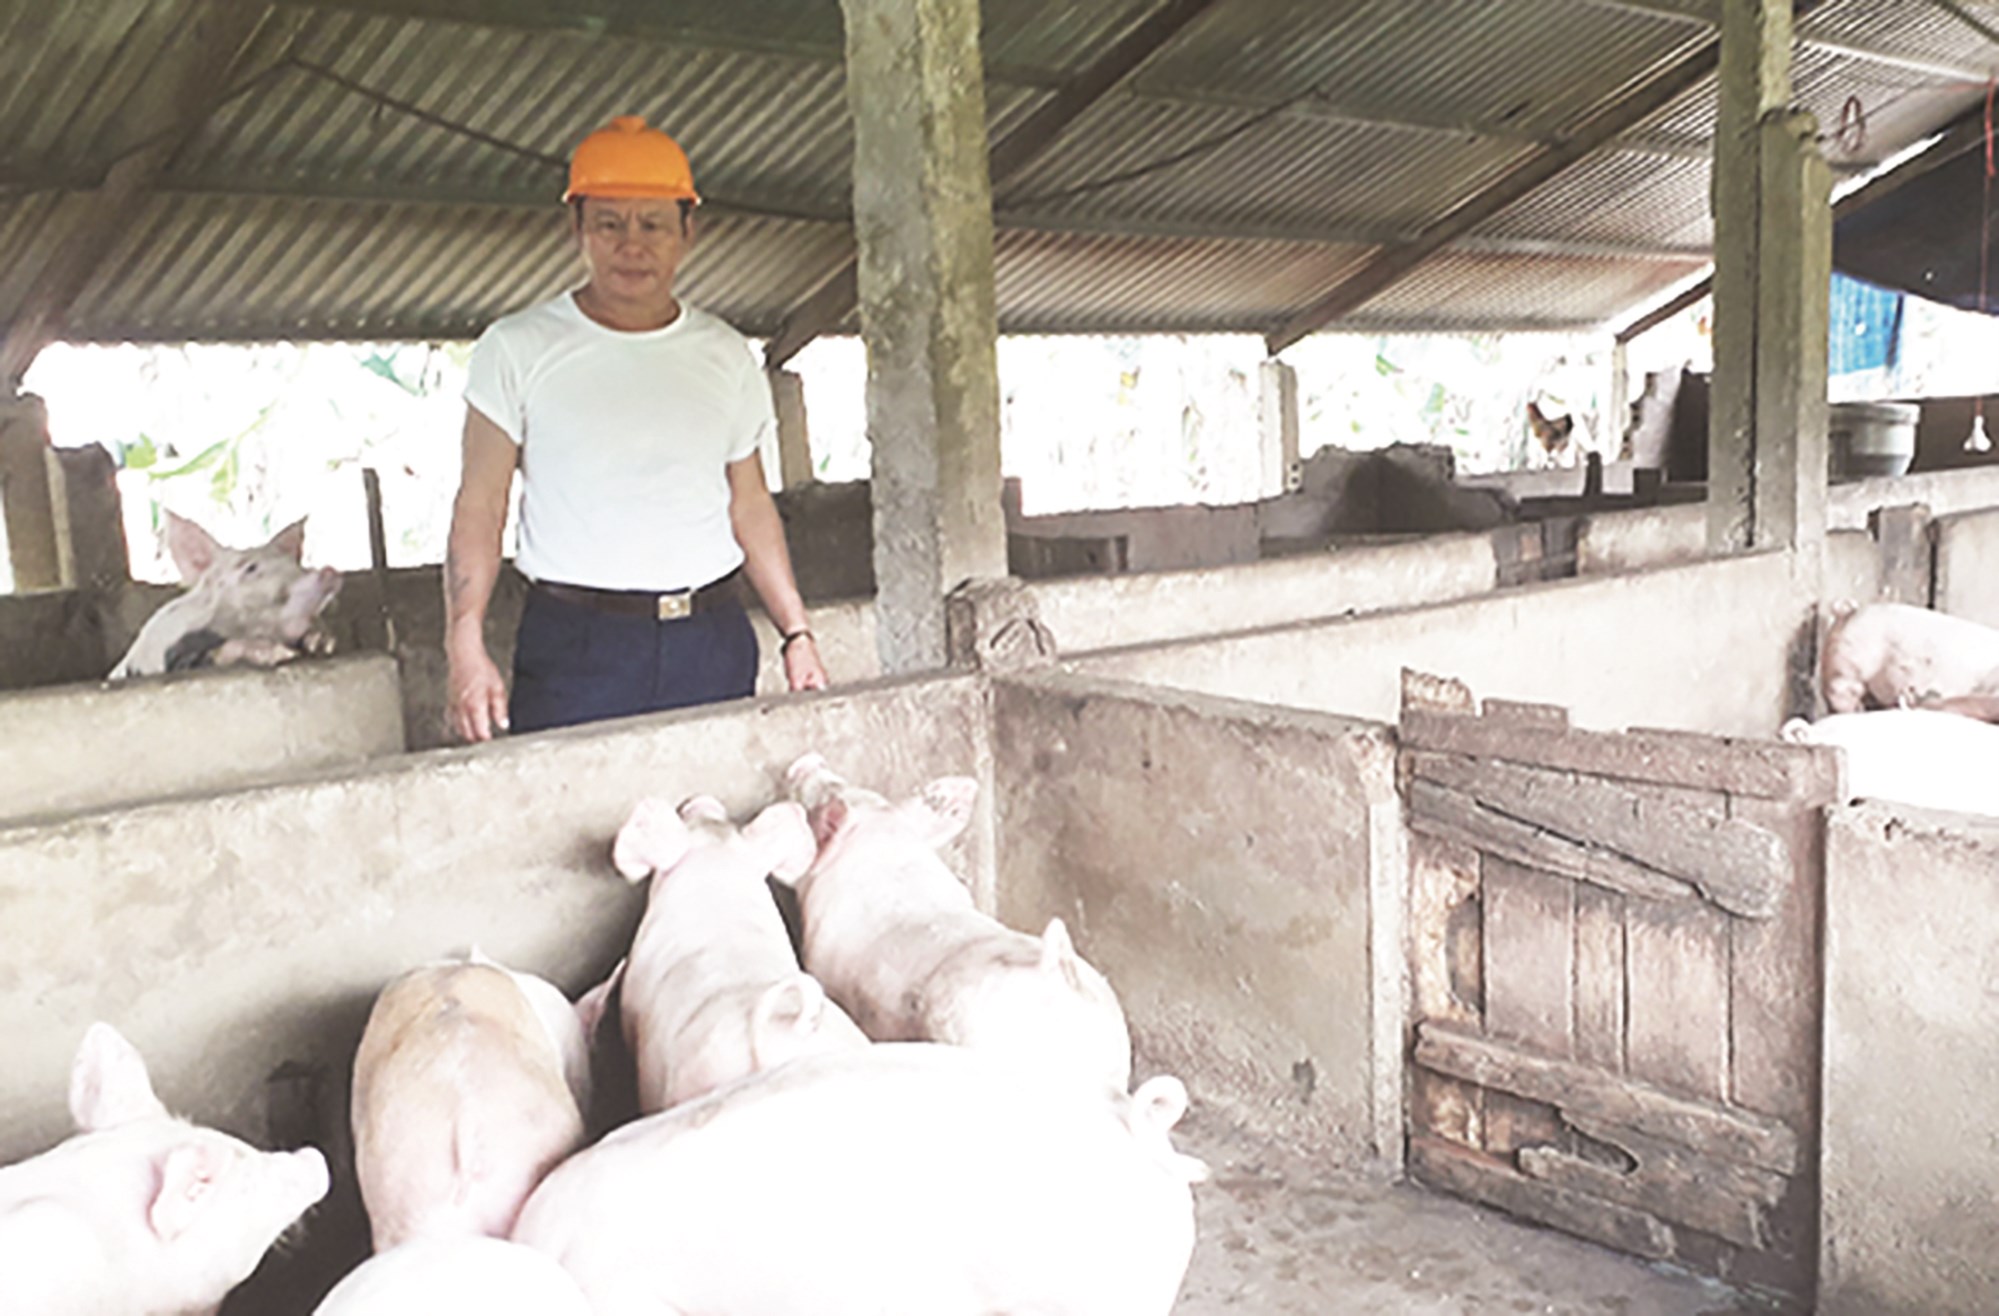 Mô hình chăn nuôi tổng hợp của gia đình anh Hà Văn Thú tạo công ăn việc làm cho nhiều lao động địa phương.